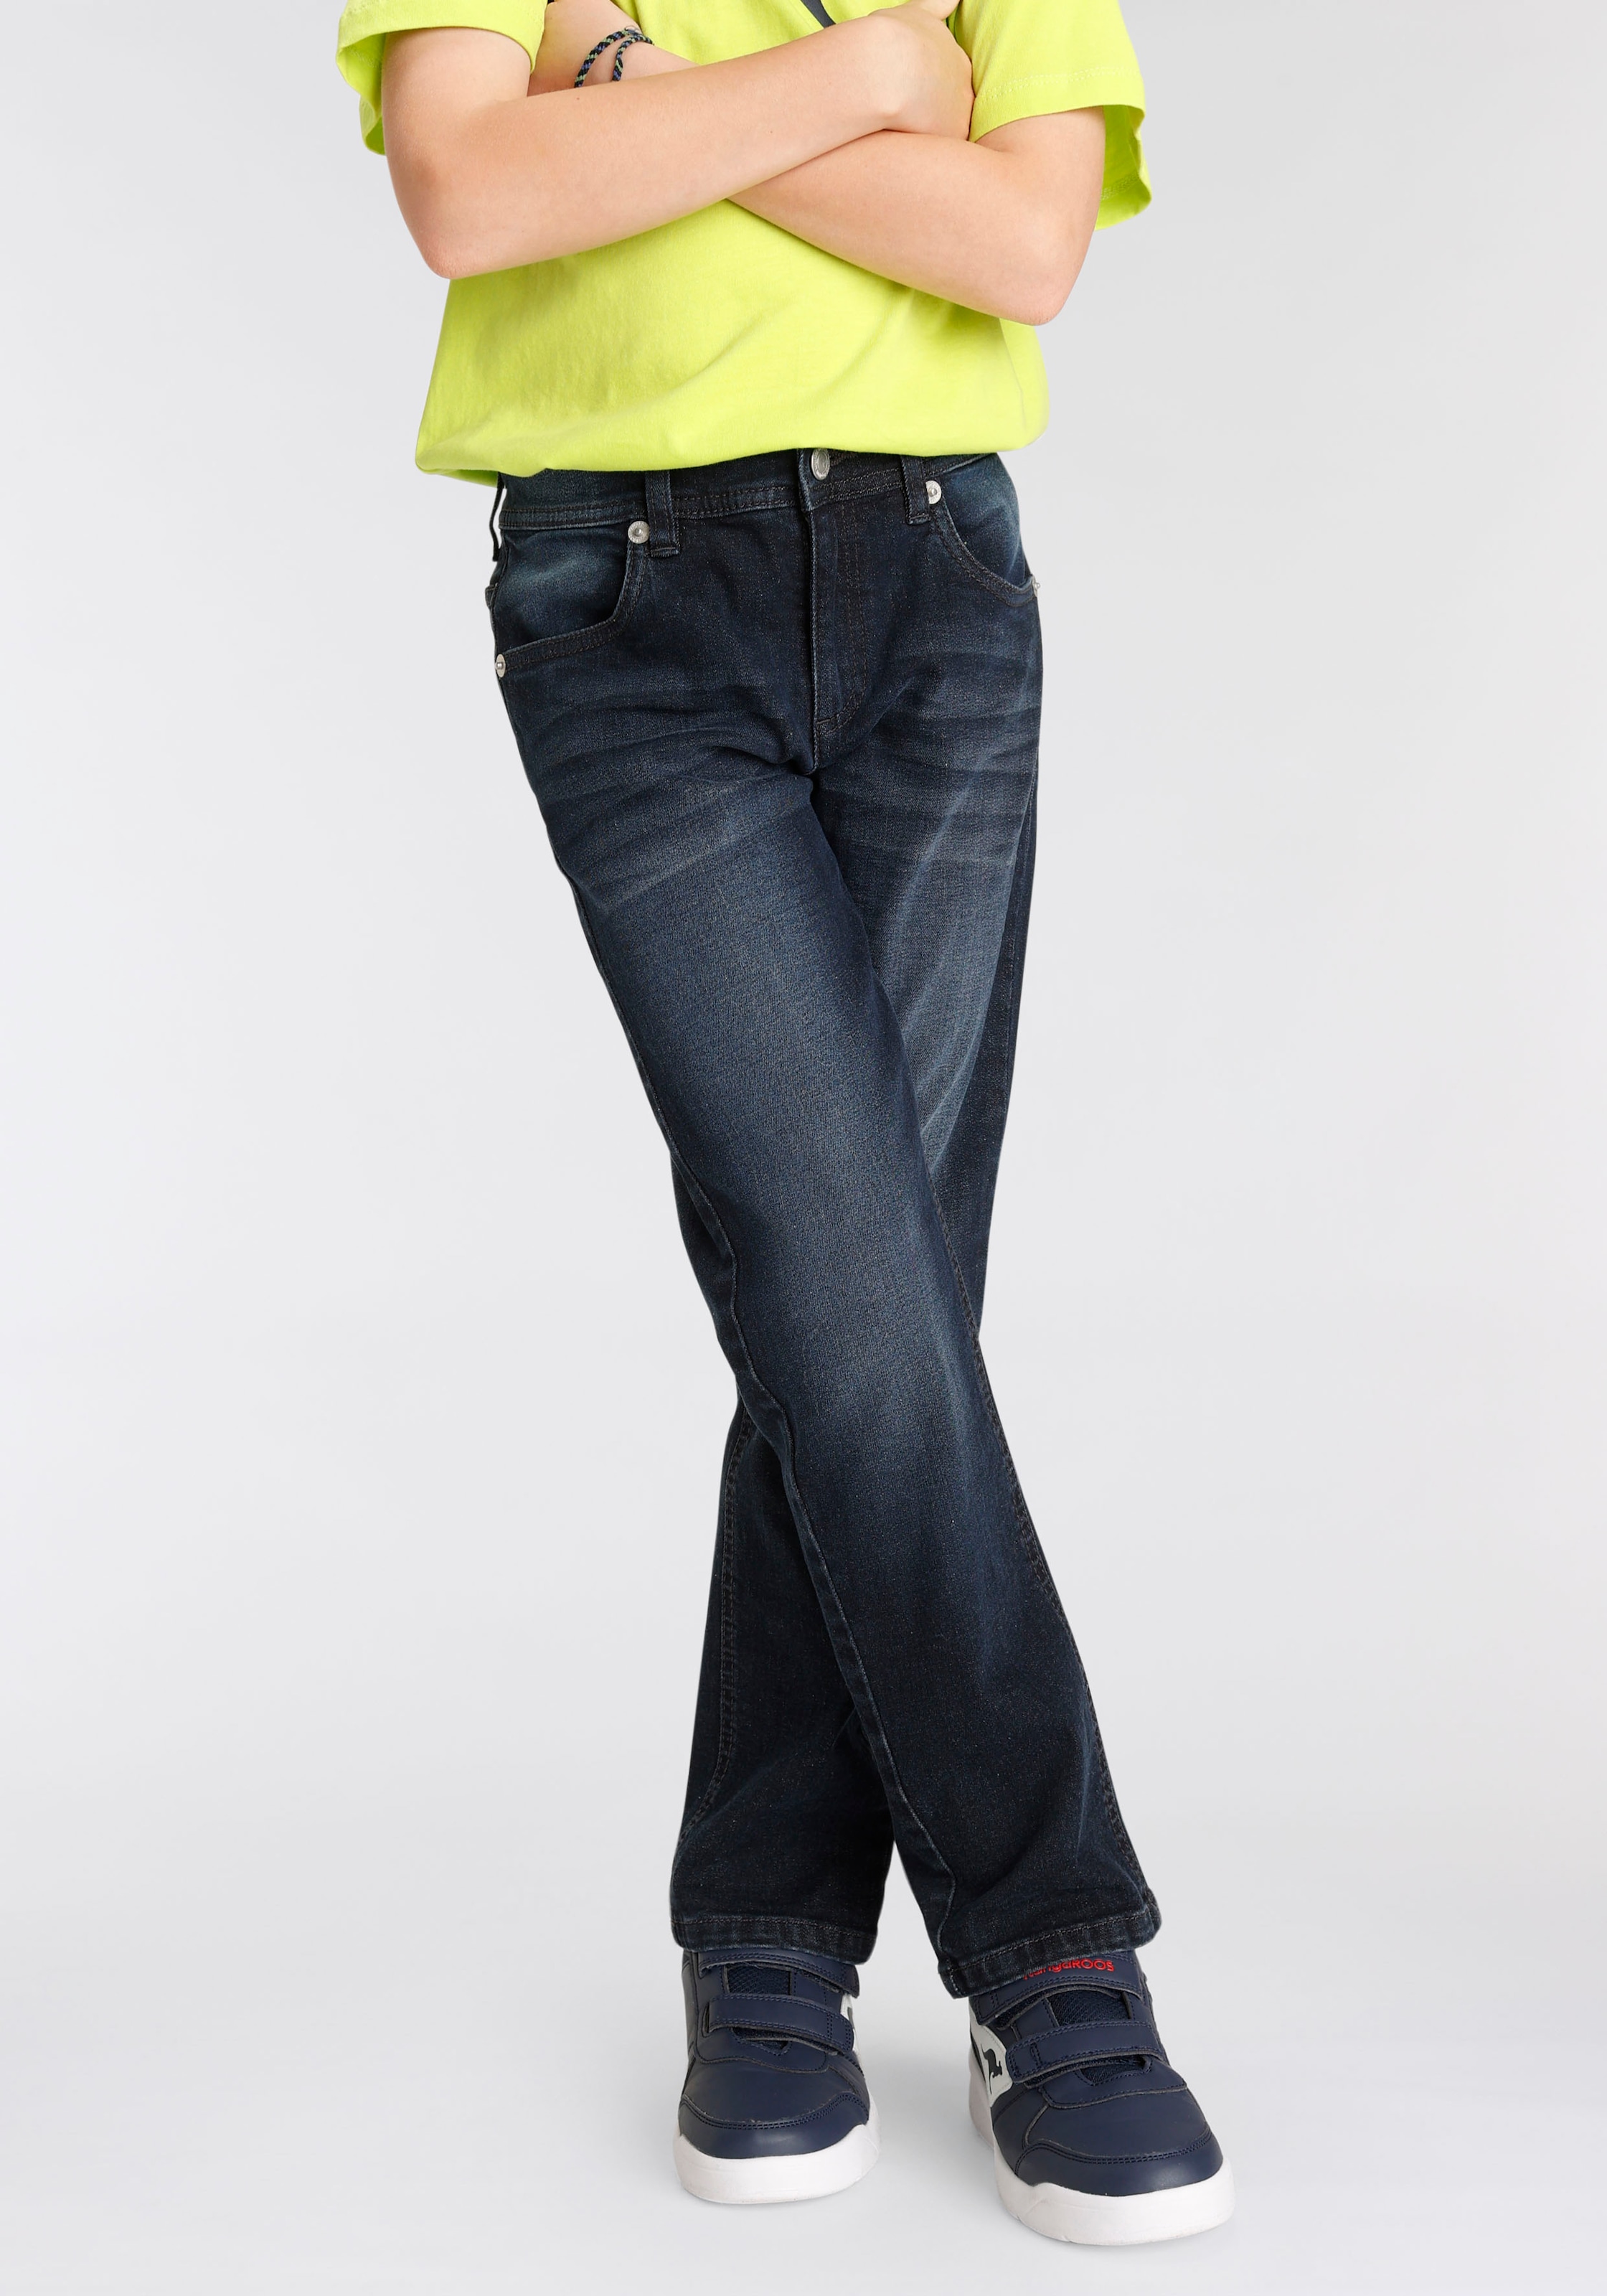 Beinverlauf« KangaROOS geradem fit regular mit Stretch-Jeans kaufen online »,